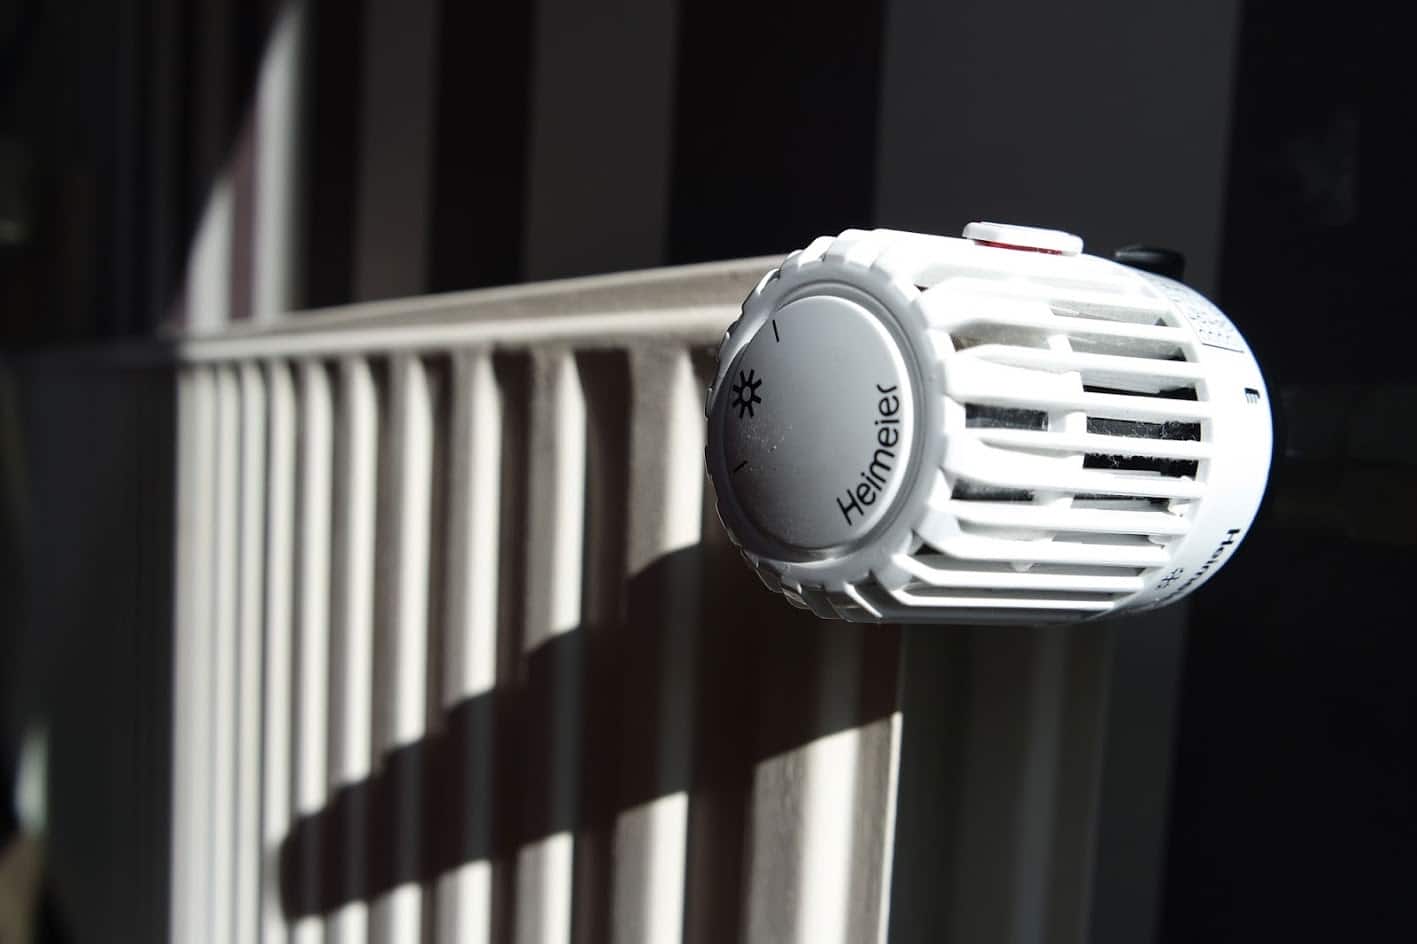 Heizung thermostat fernfühler - Die preiswertesten Heizung thermostat fernfühler verglichen